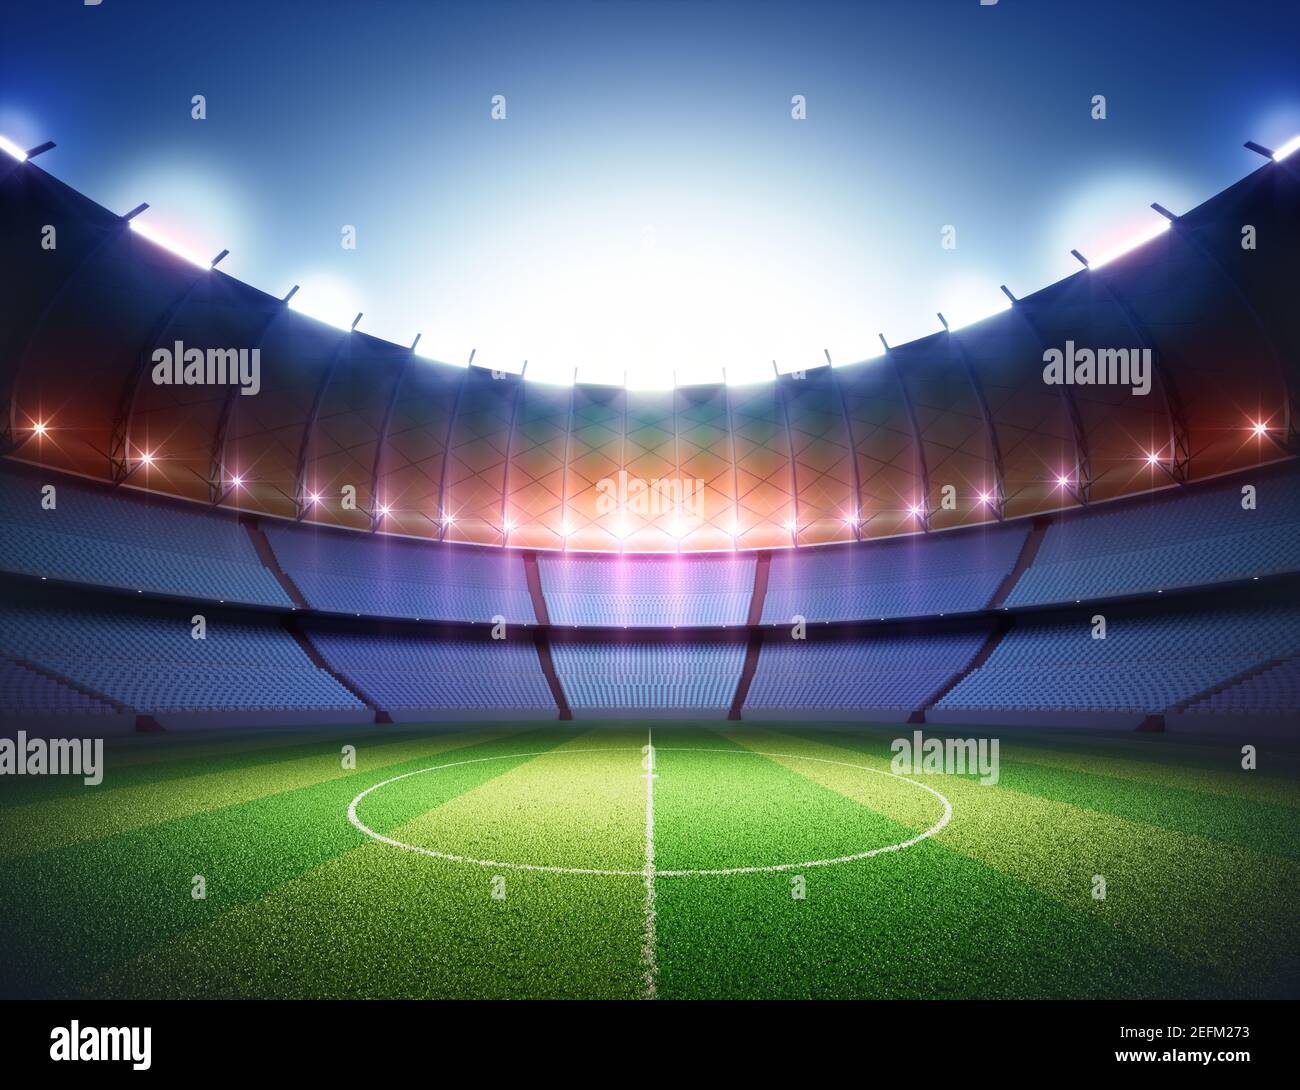 Terrain de football dans le stade. Pelouse éclairée au centre par les lumières environnantes. Banque D'Images